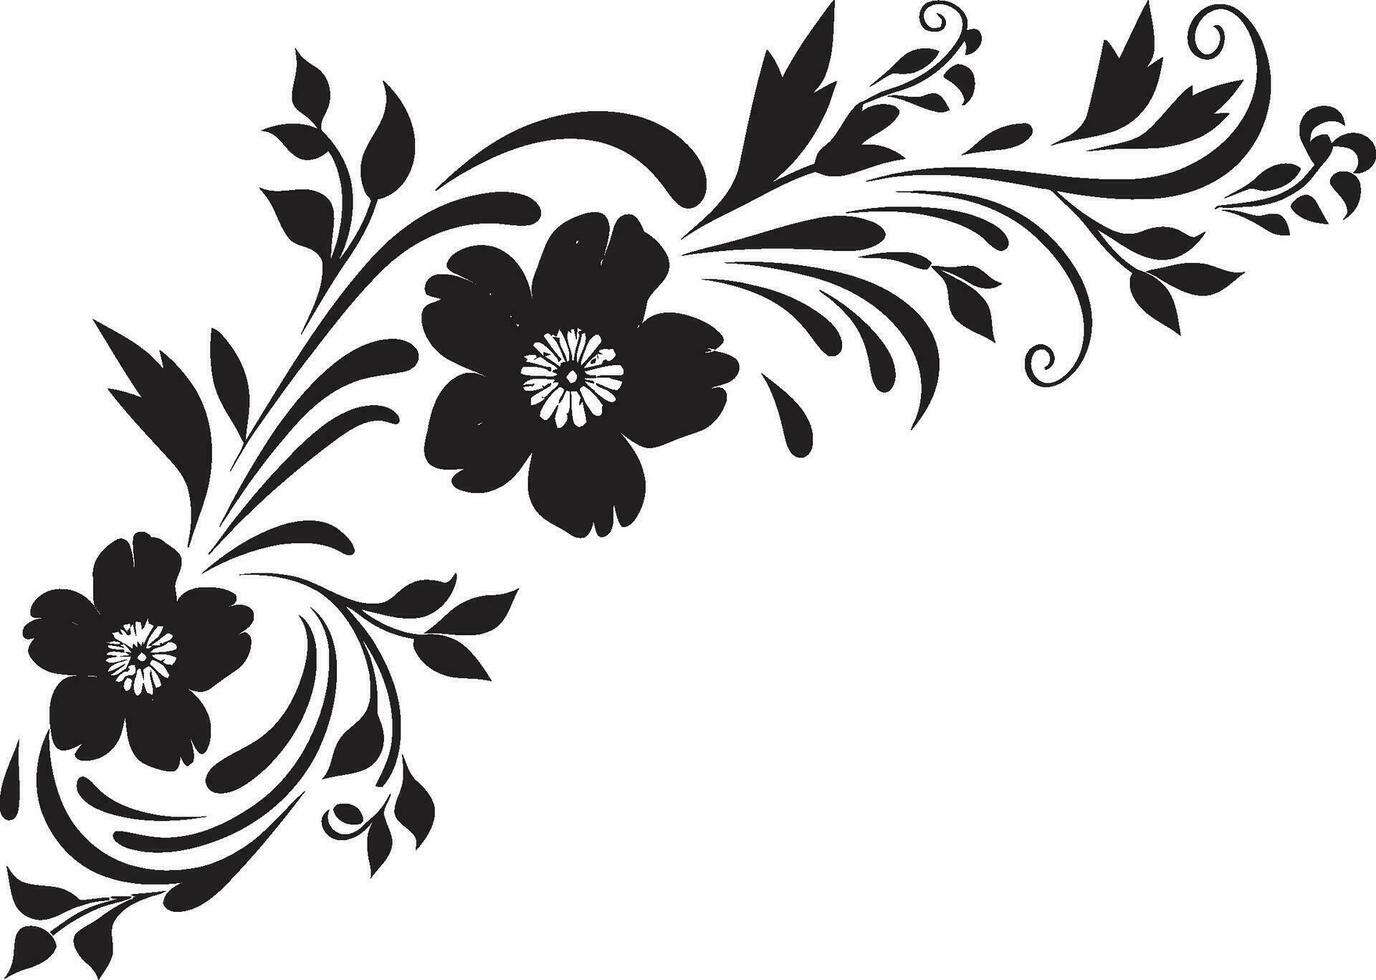 noir blühen Symphonie Graphit Hand gezeichnet Logo Symbole wunderlich eingefärbt Flora launisch Blumen- Vektor Chroniken